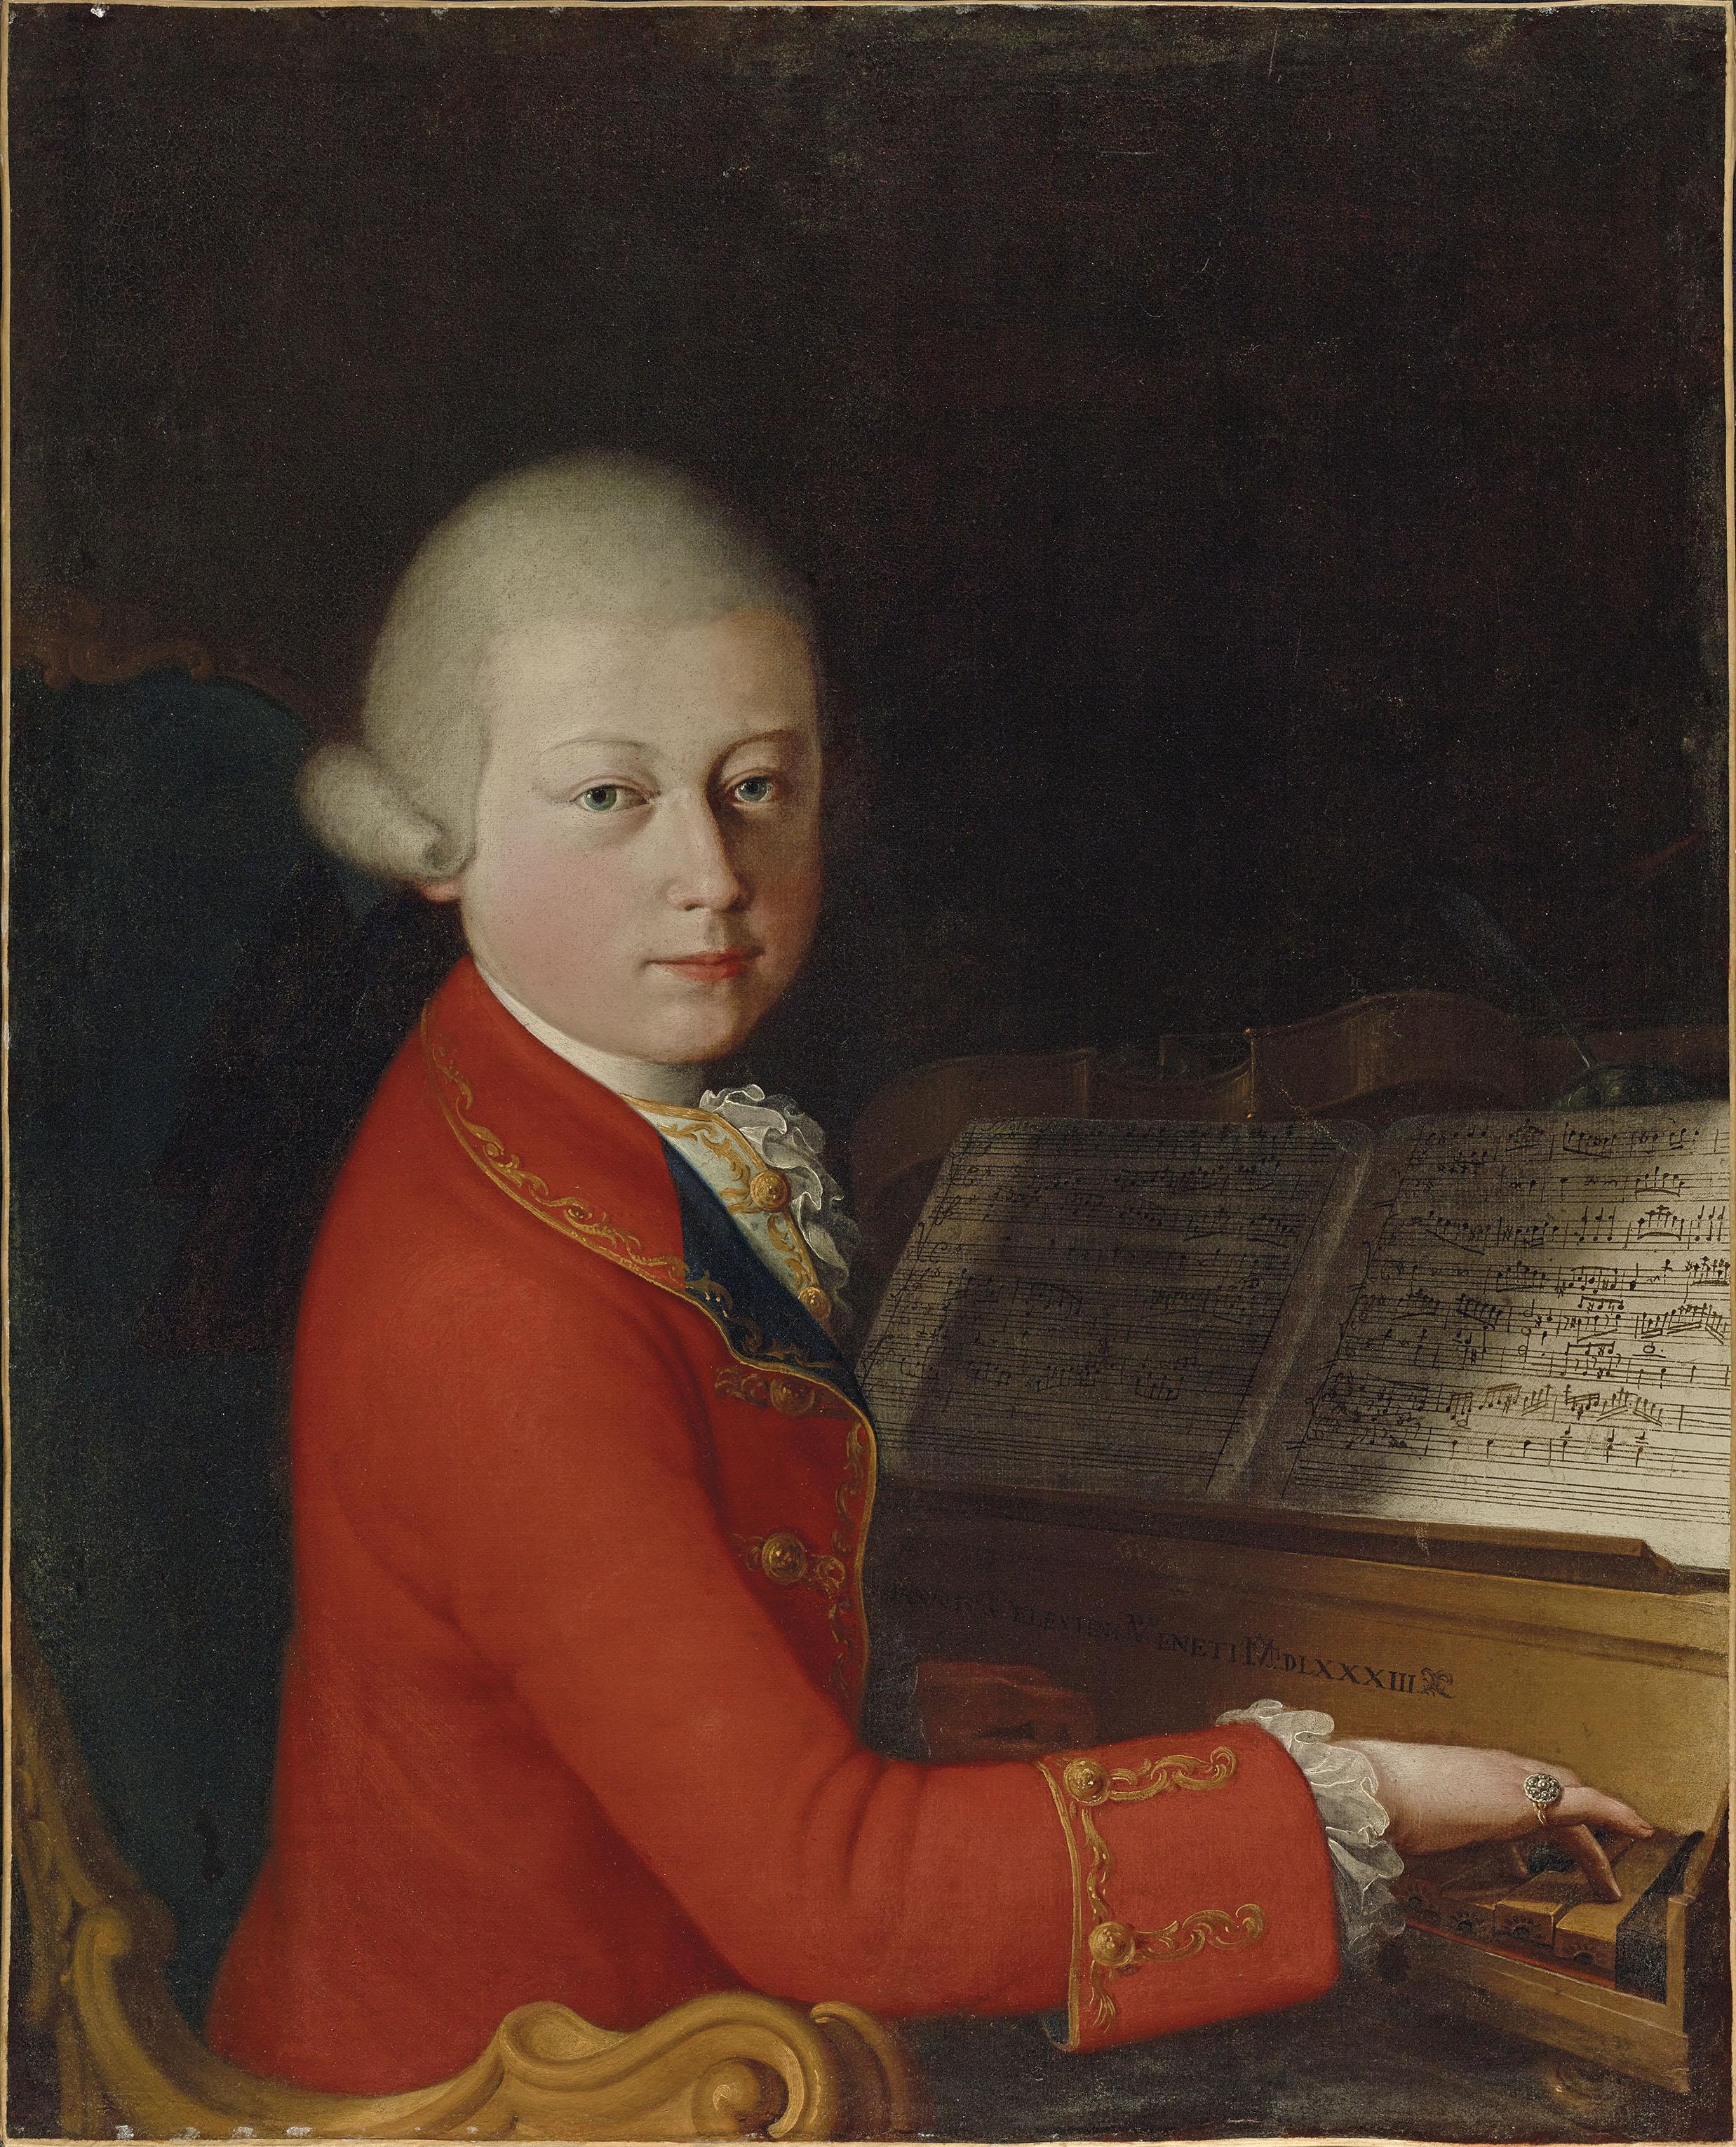 Mozart’ın çocukluğuna ait portre 4 milyon euroya satıldı